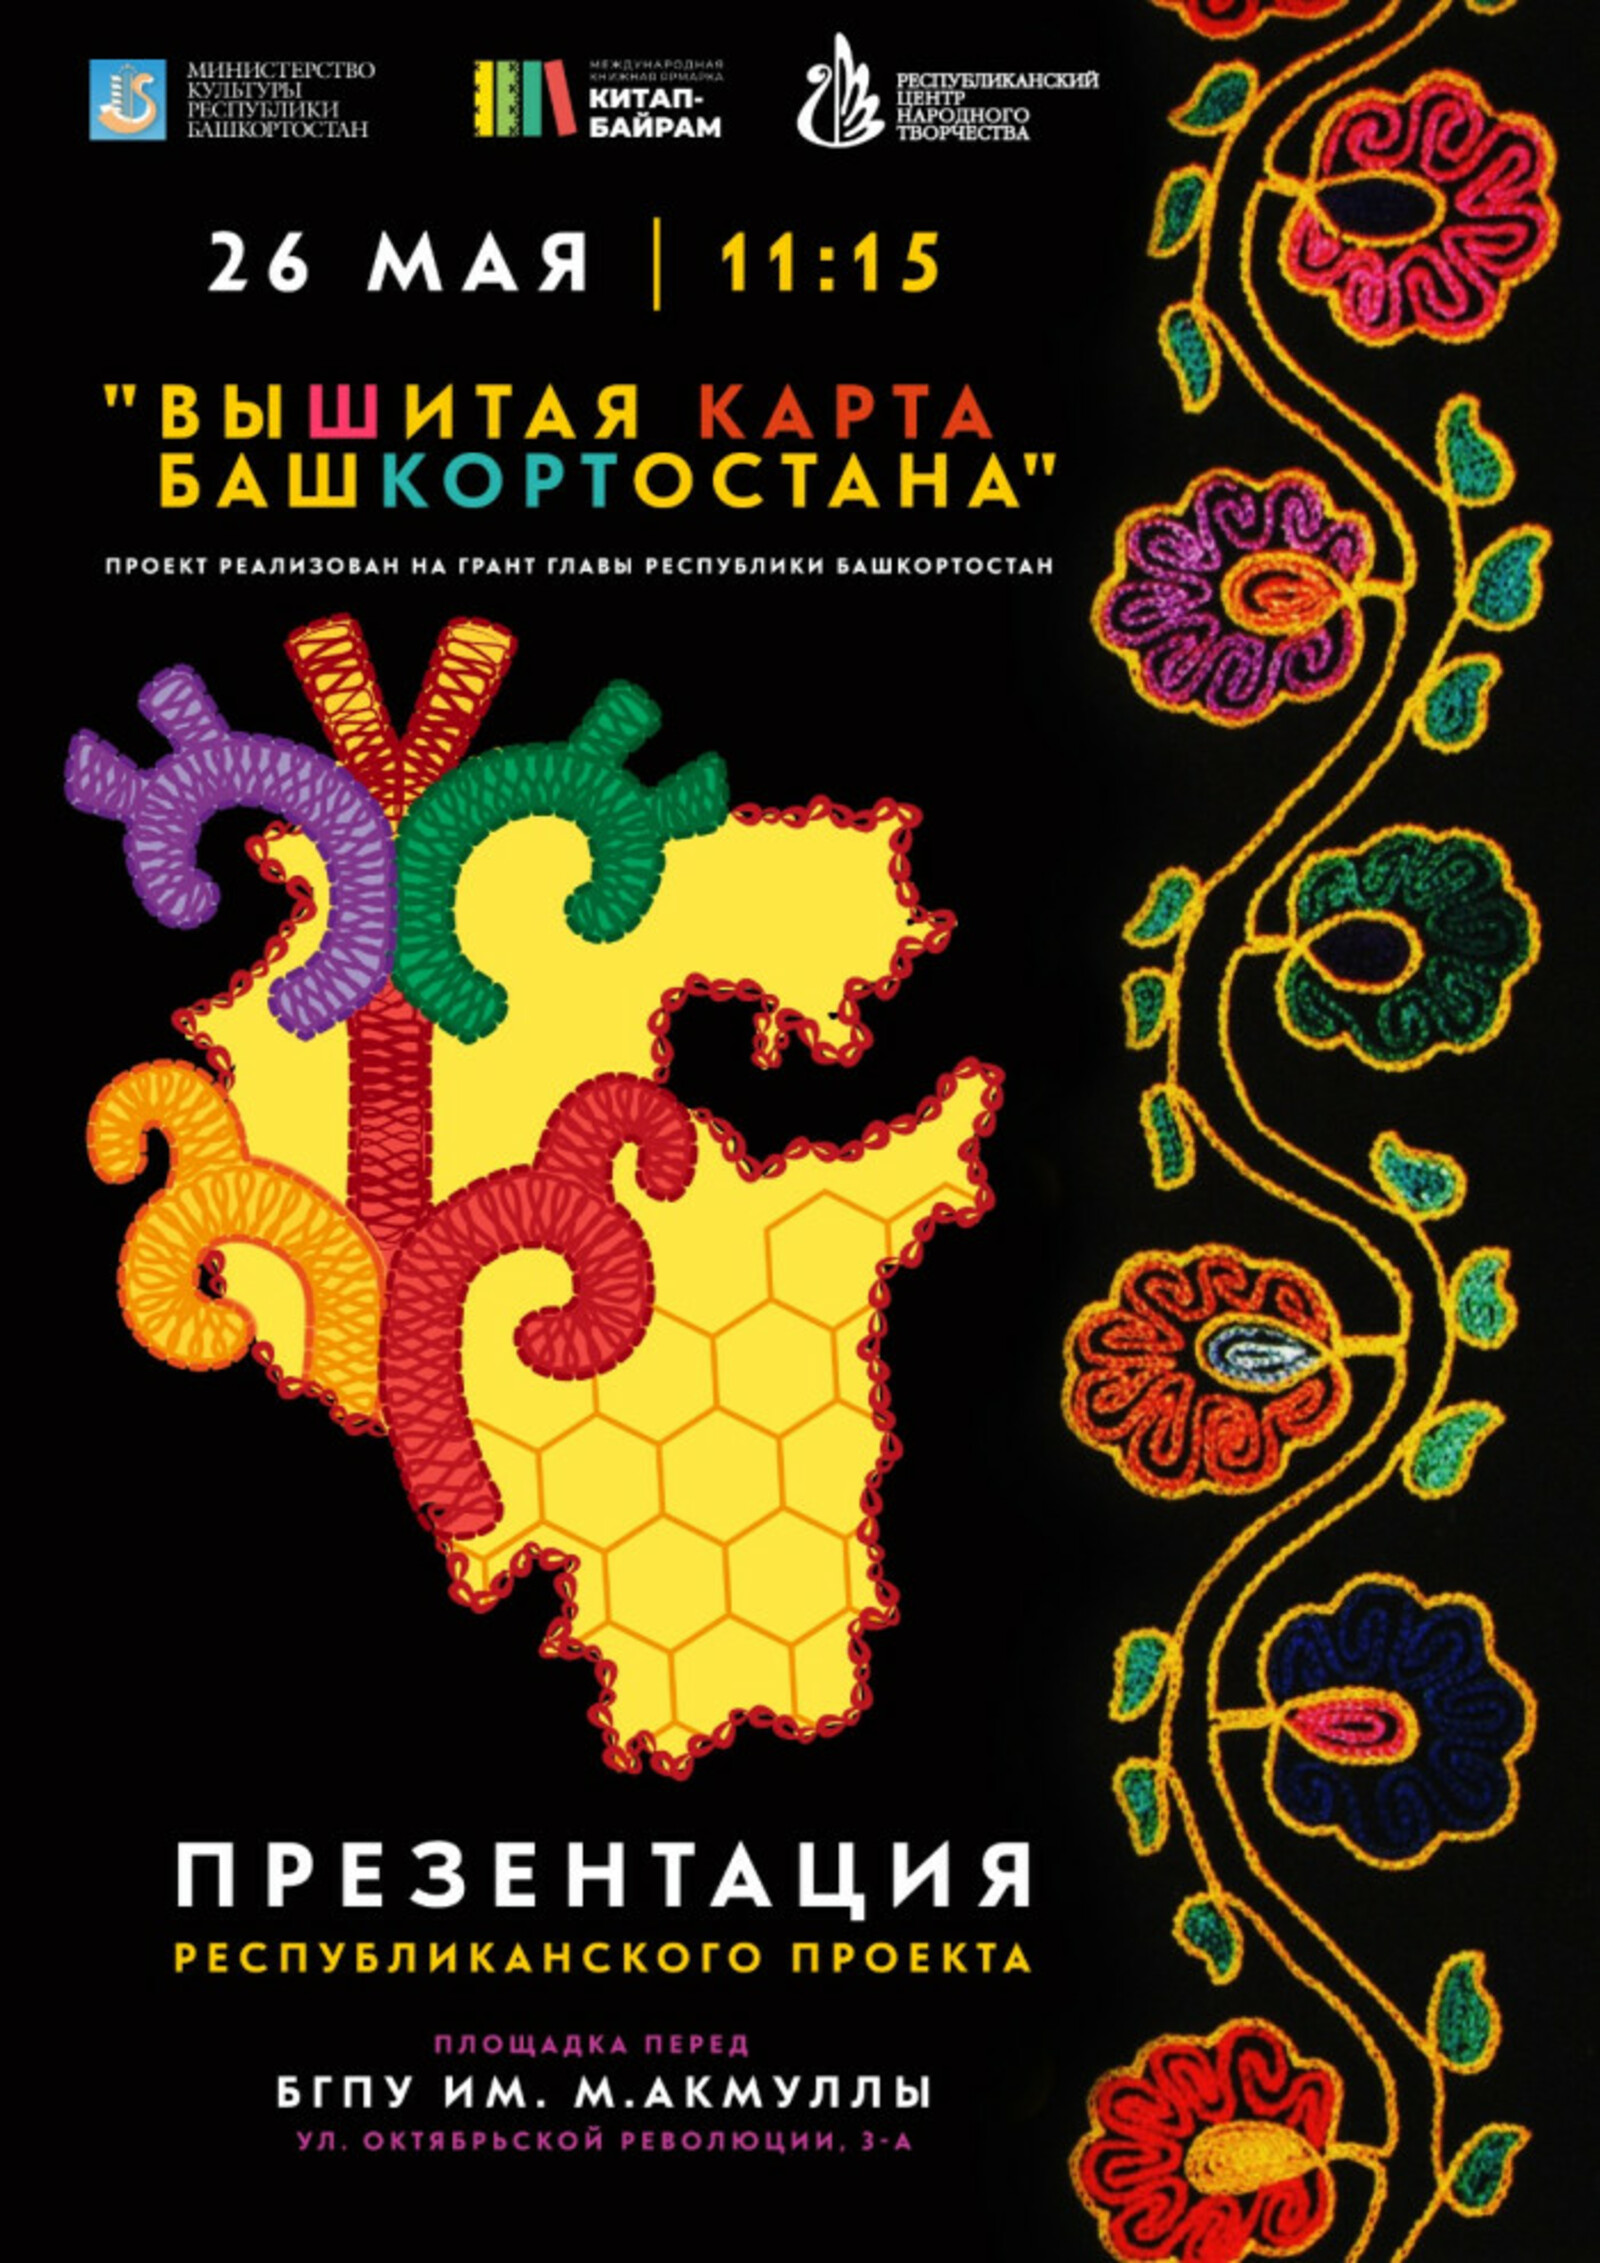 В Уфе в рамках презентации проекта «Вышитая карта Башкортостана» пройдет семинар по вышивке